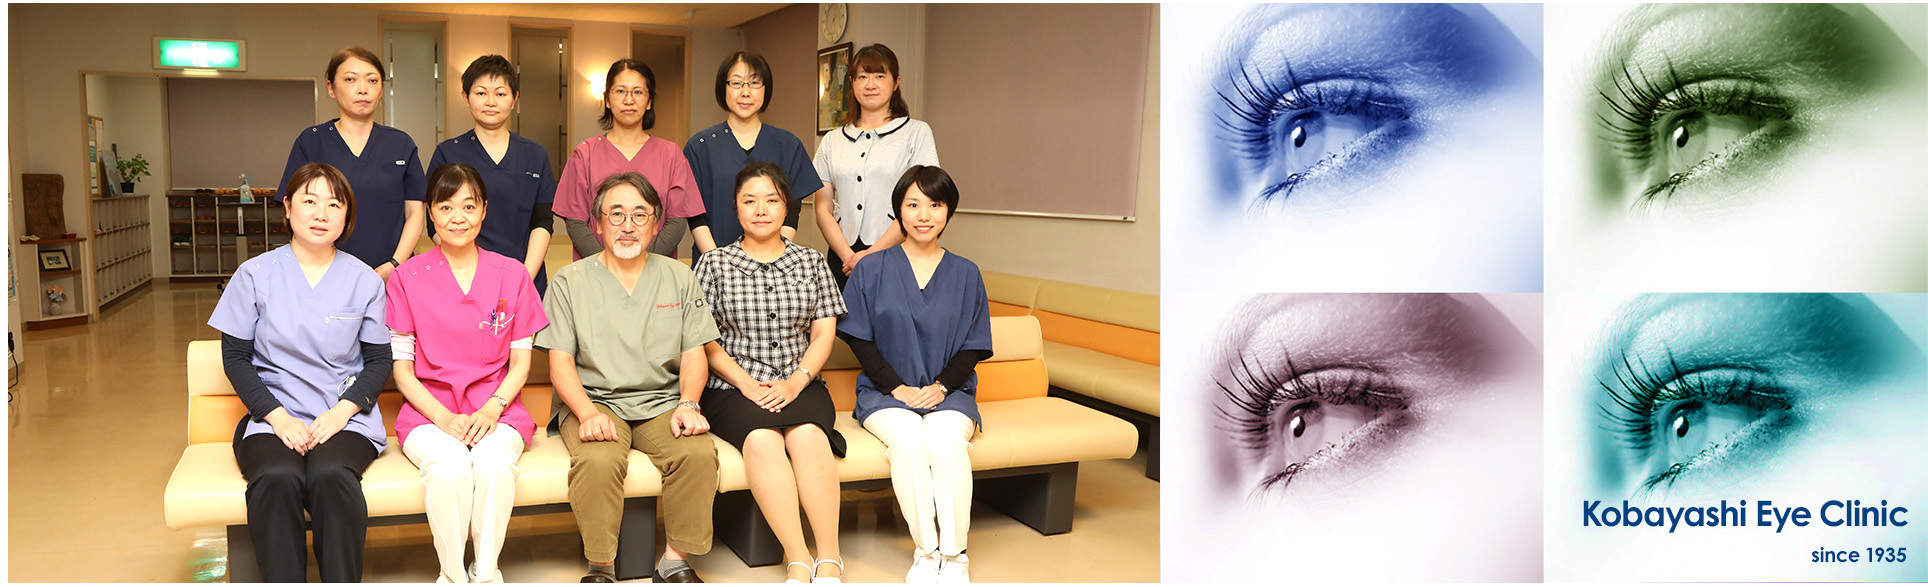 Kobayashi Eye Clinic